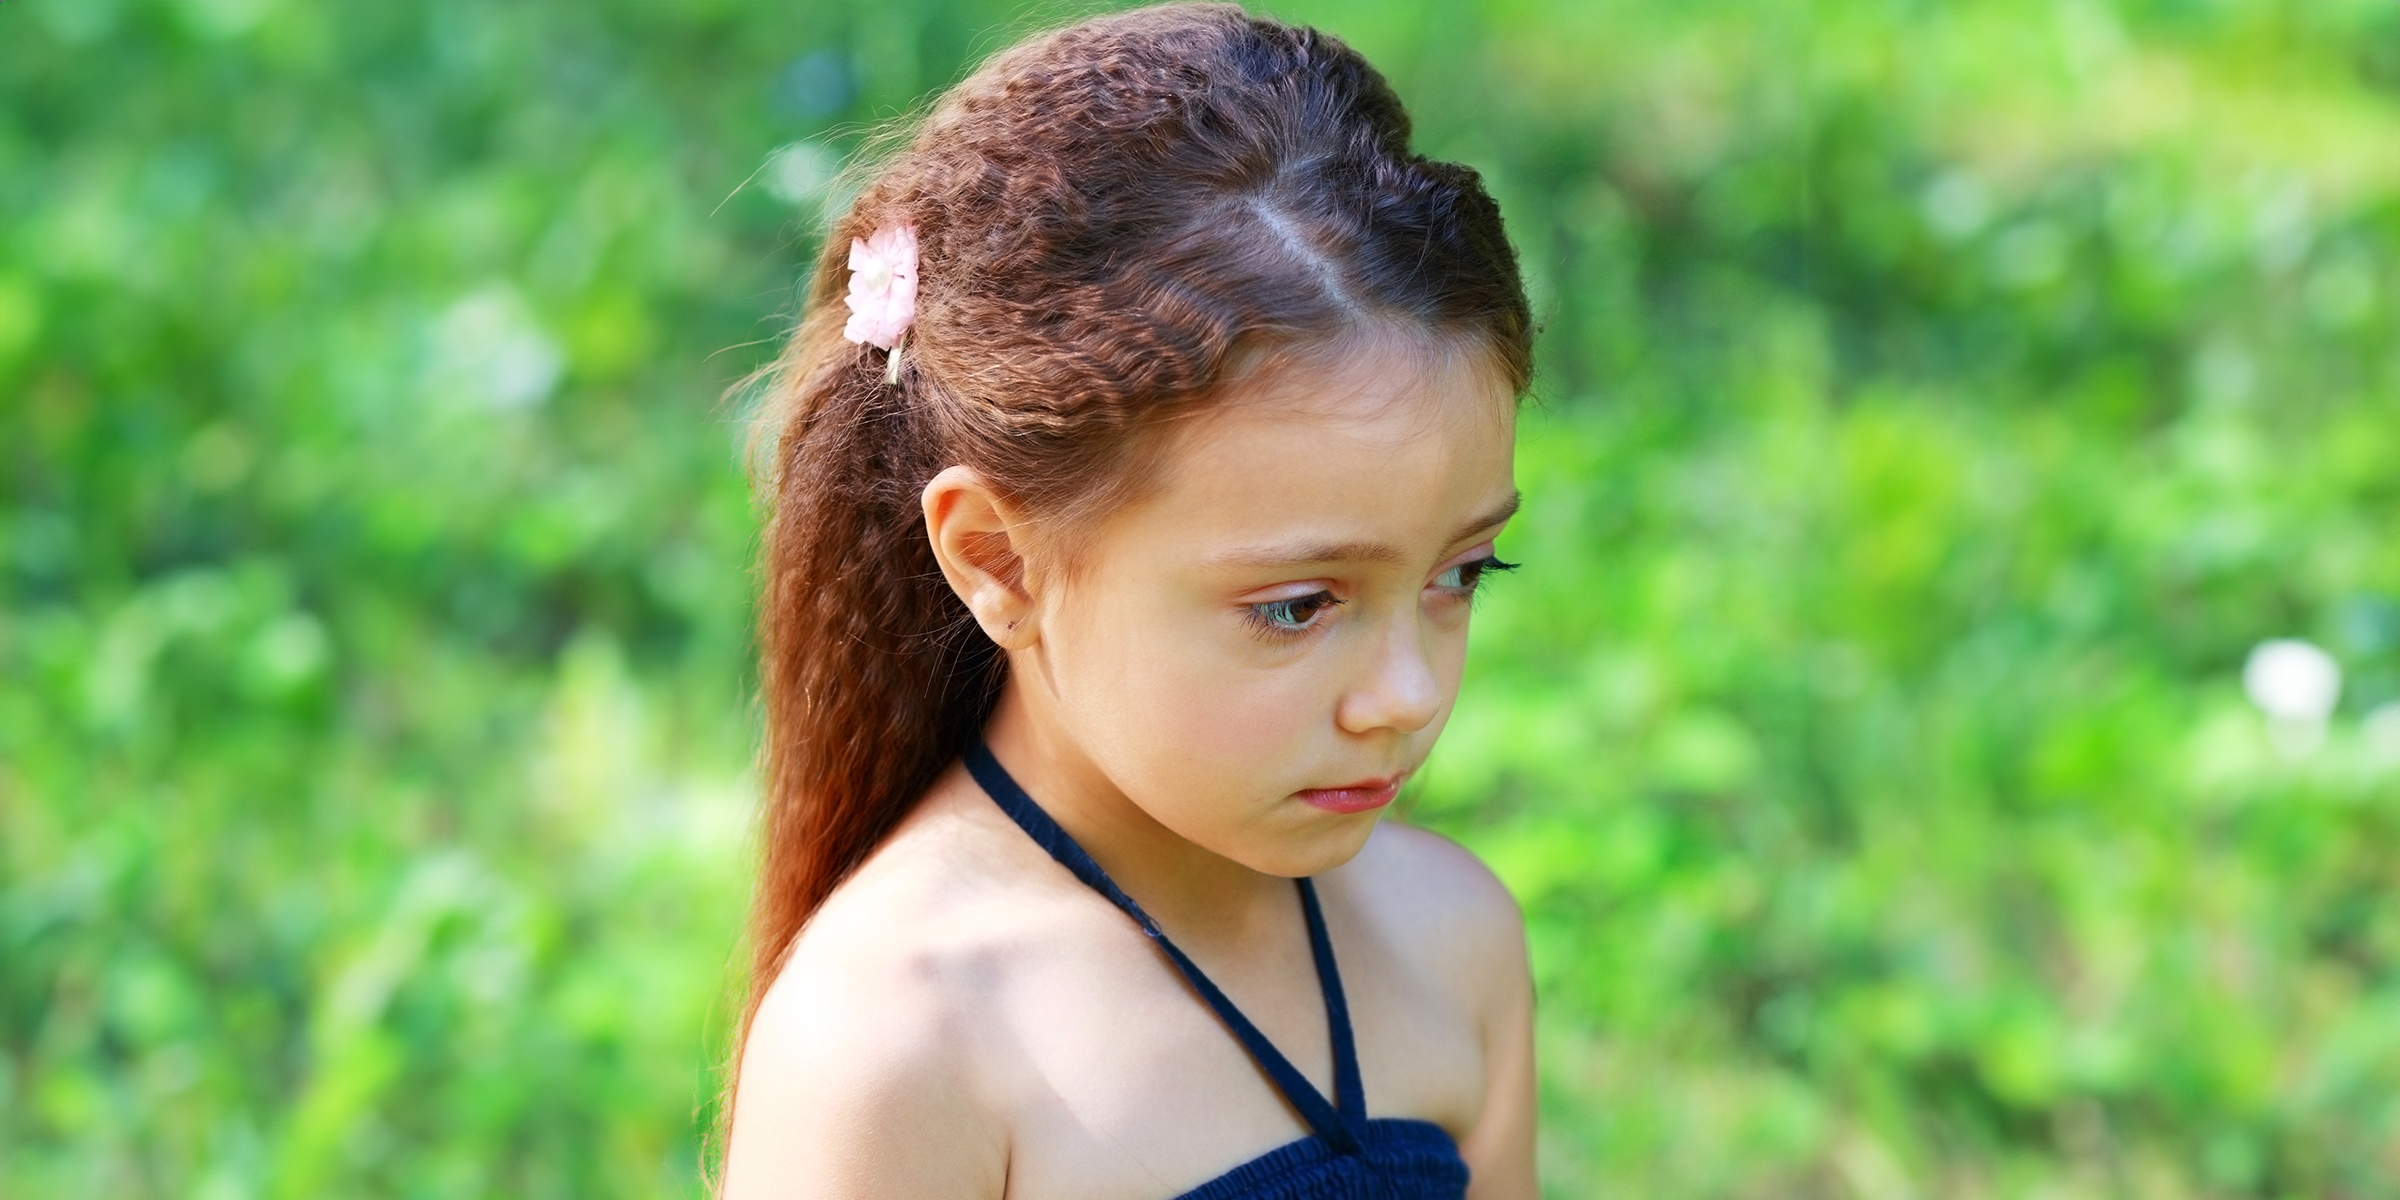 A sad little girl | Source: Shutterstock